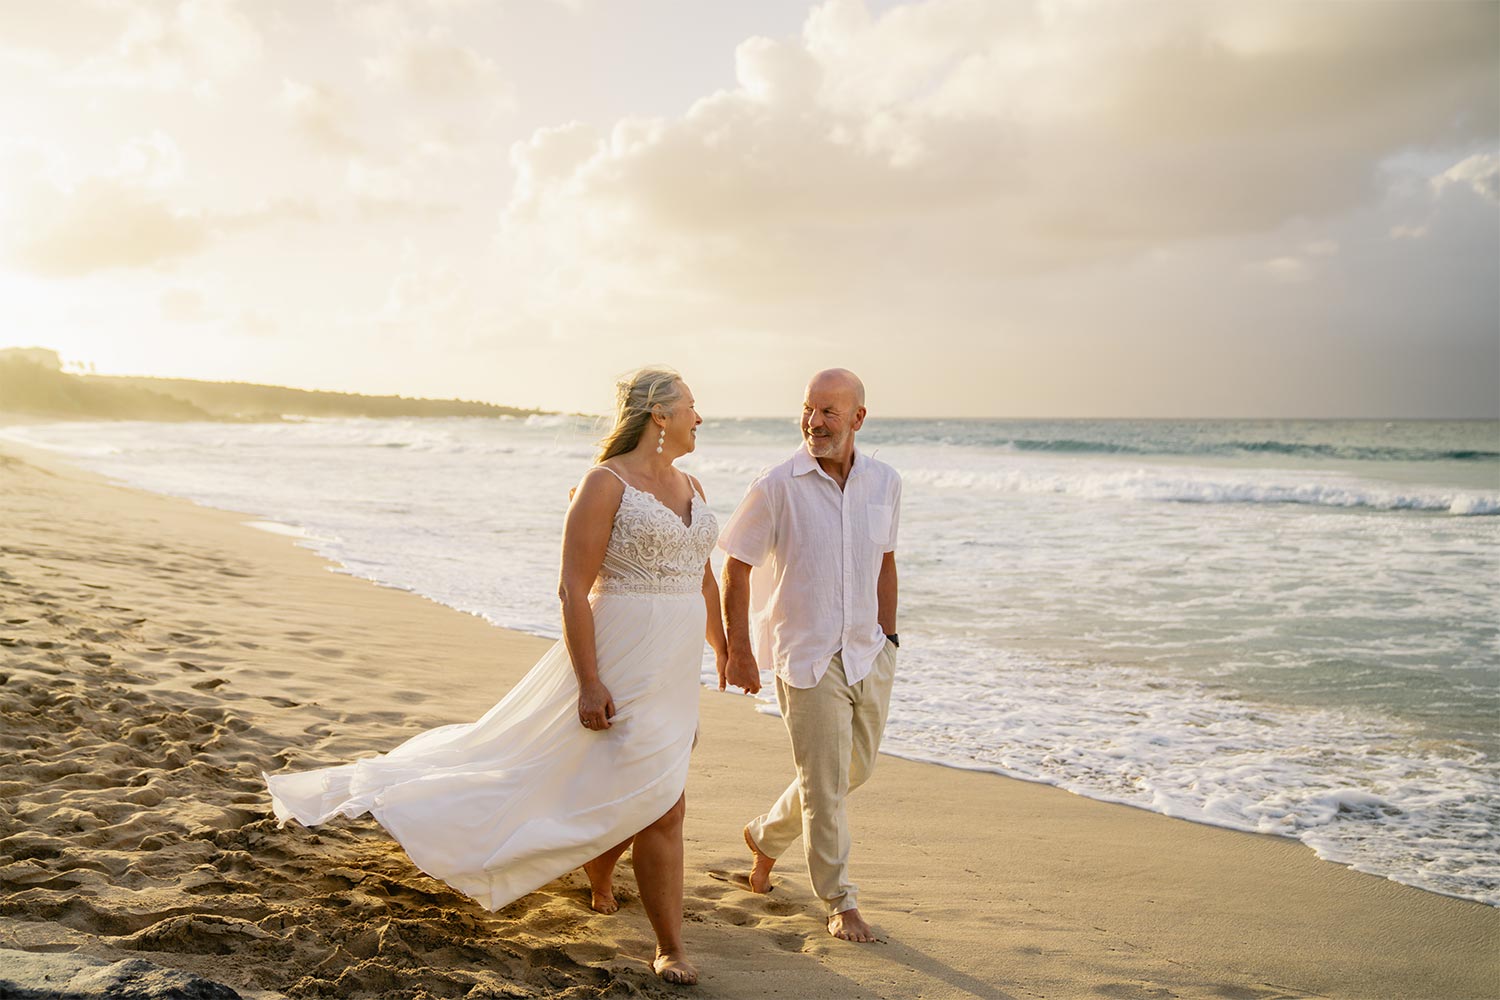 Wedding photo on Maui beach